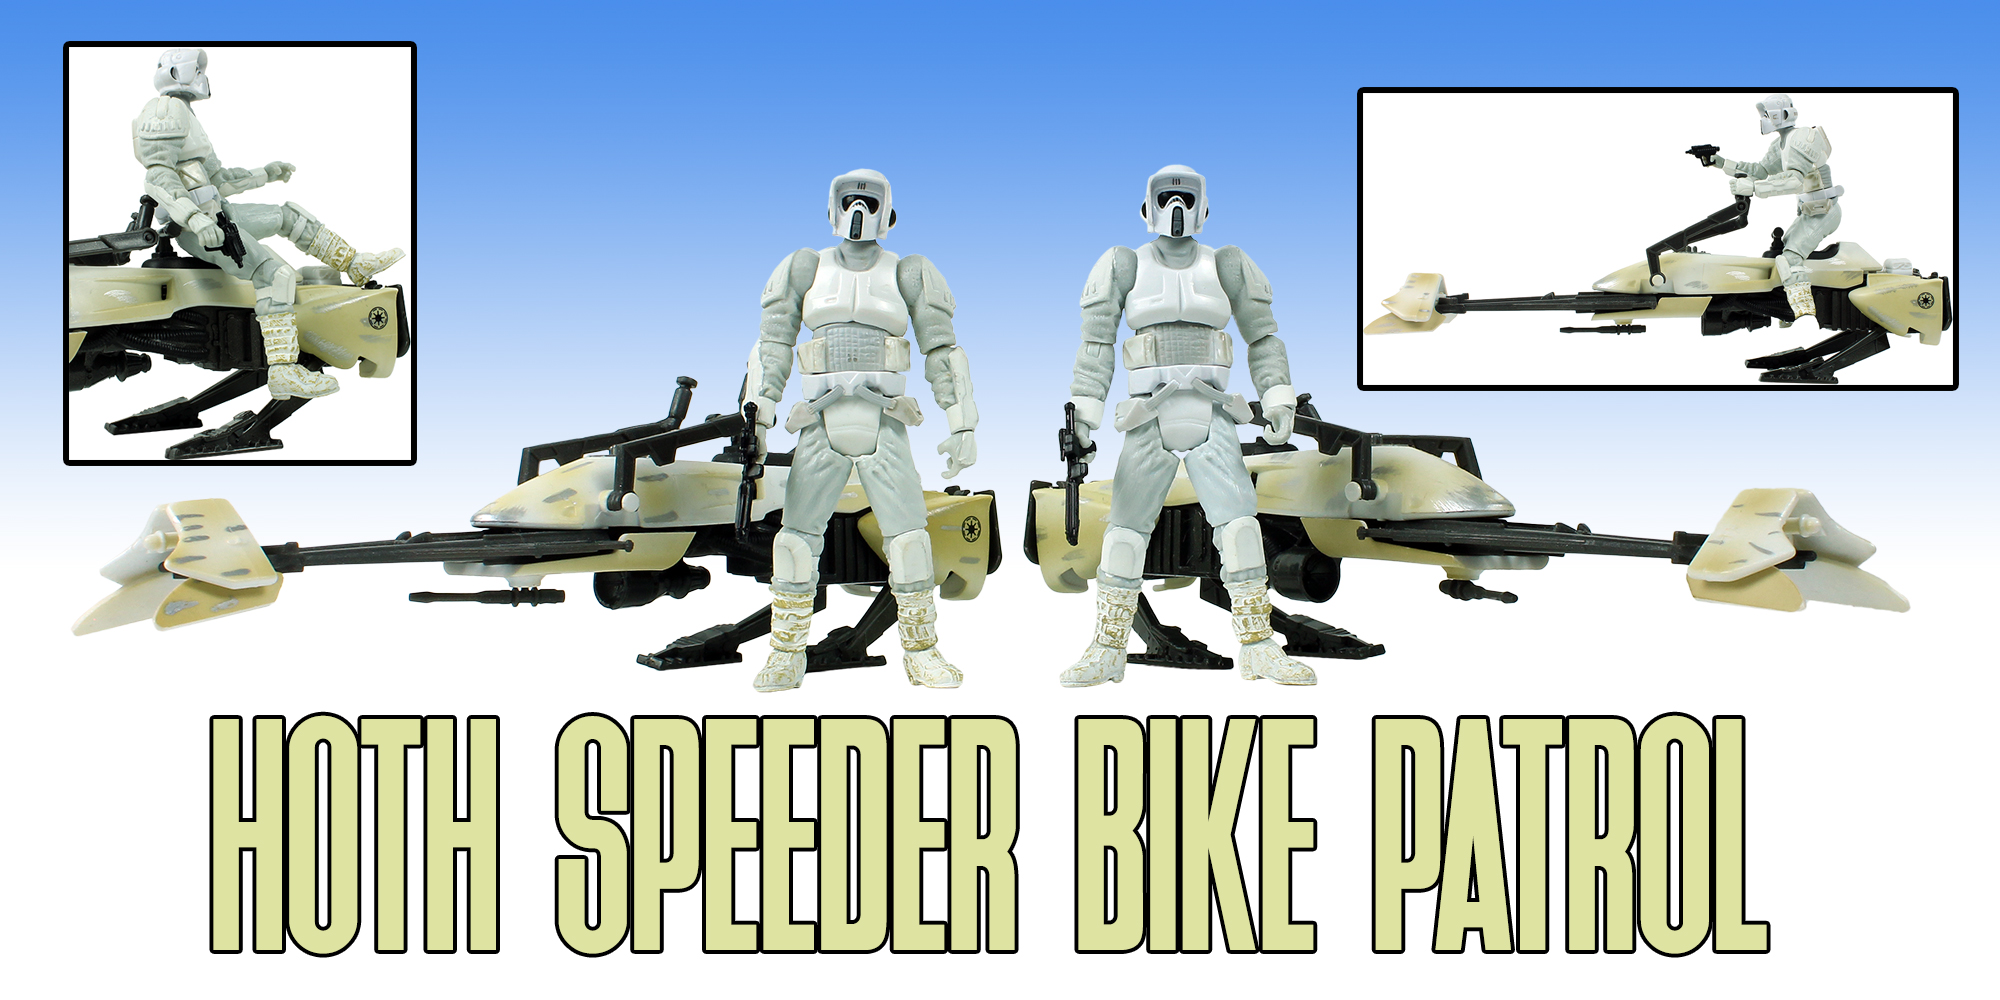 Hoth Speeder Bike Patrol